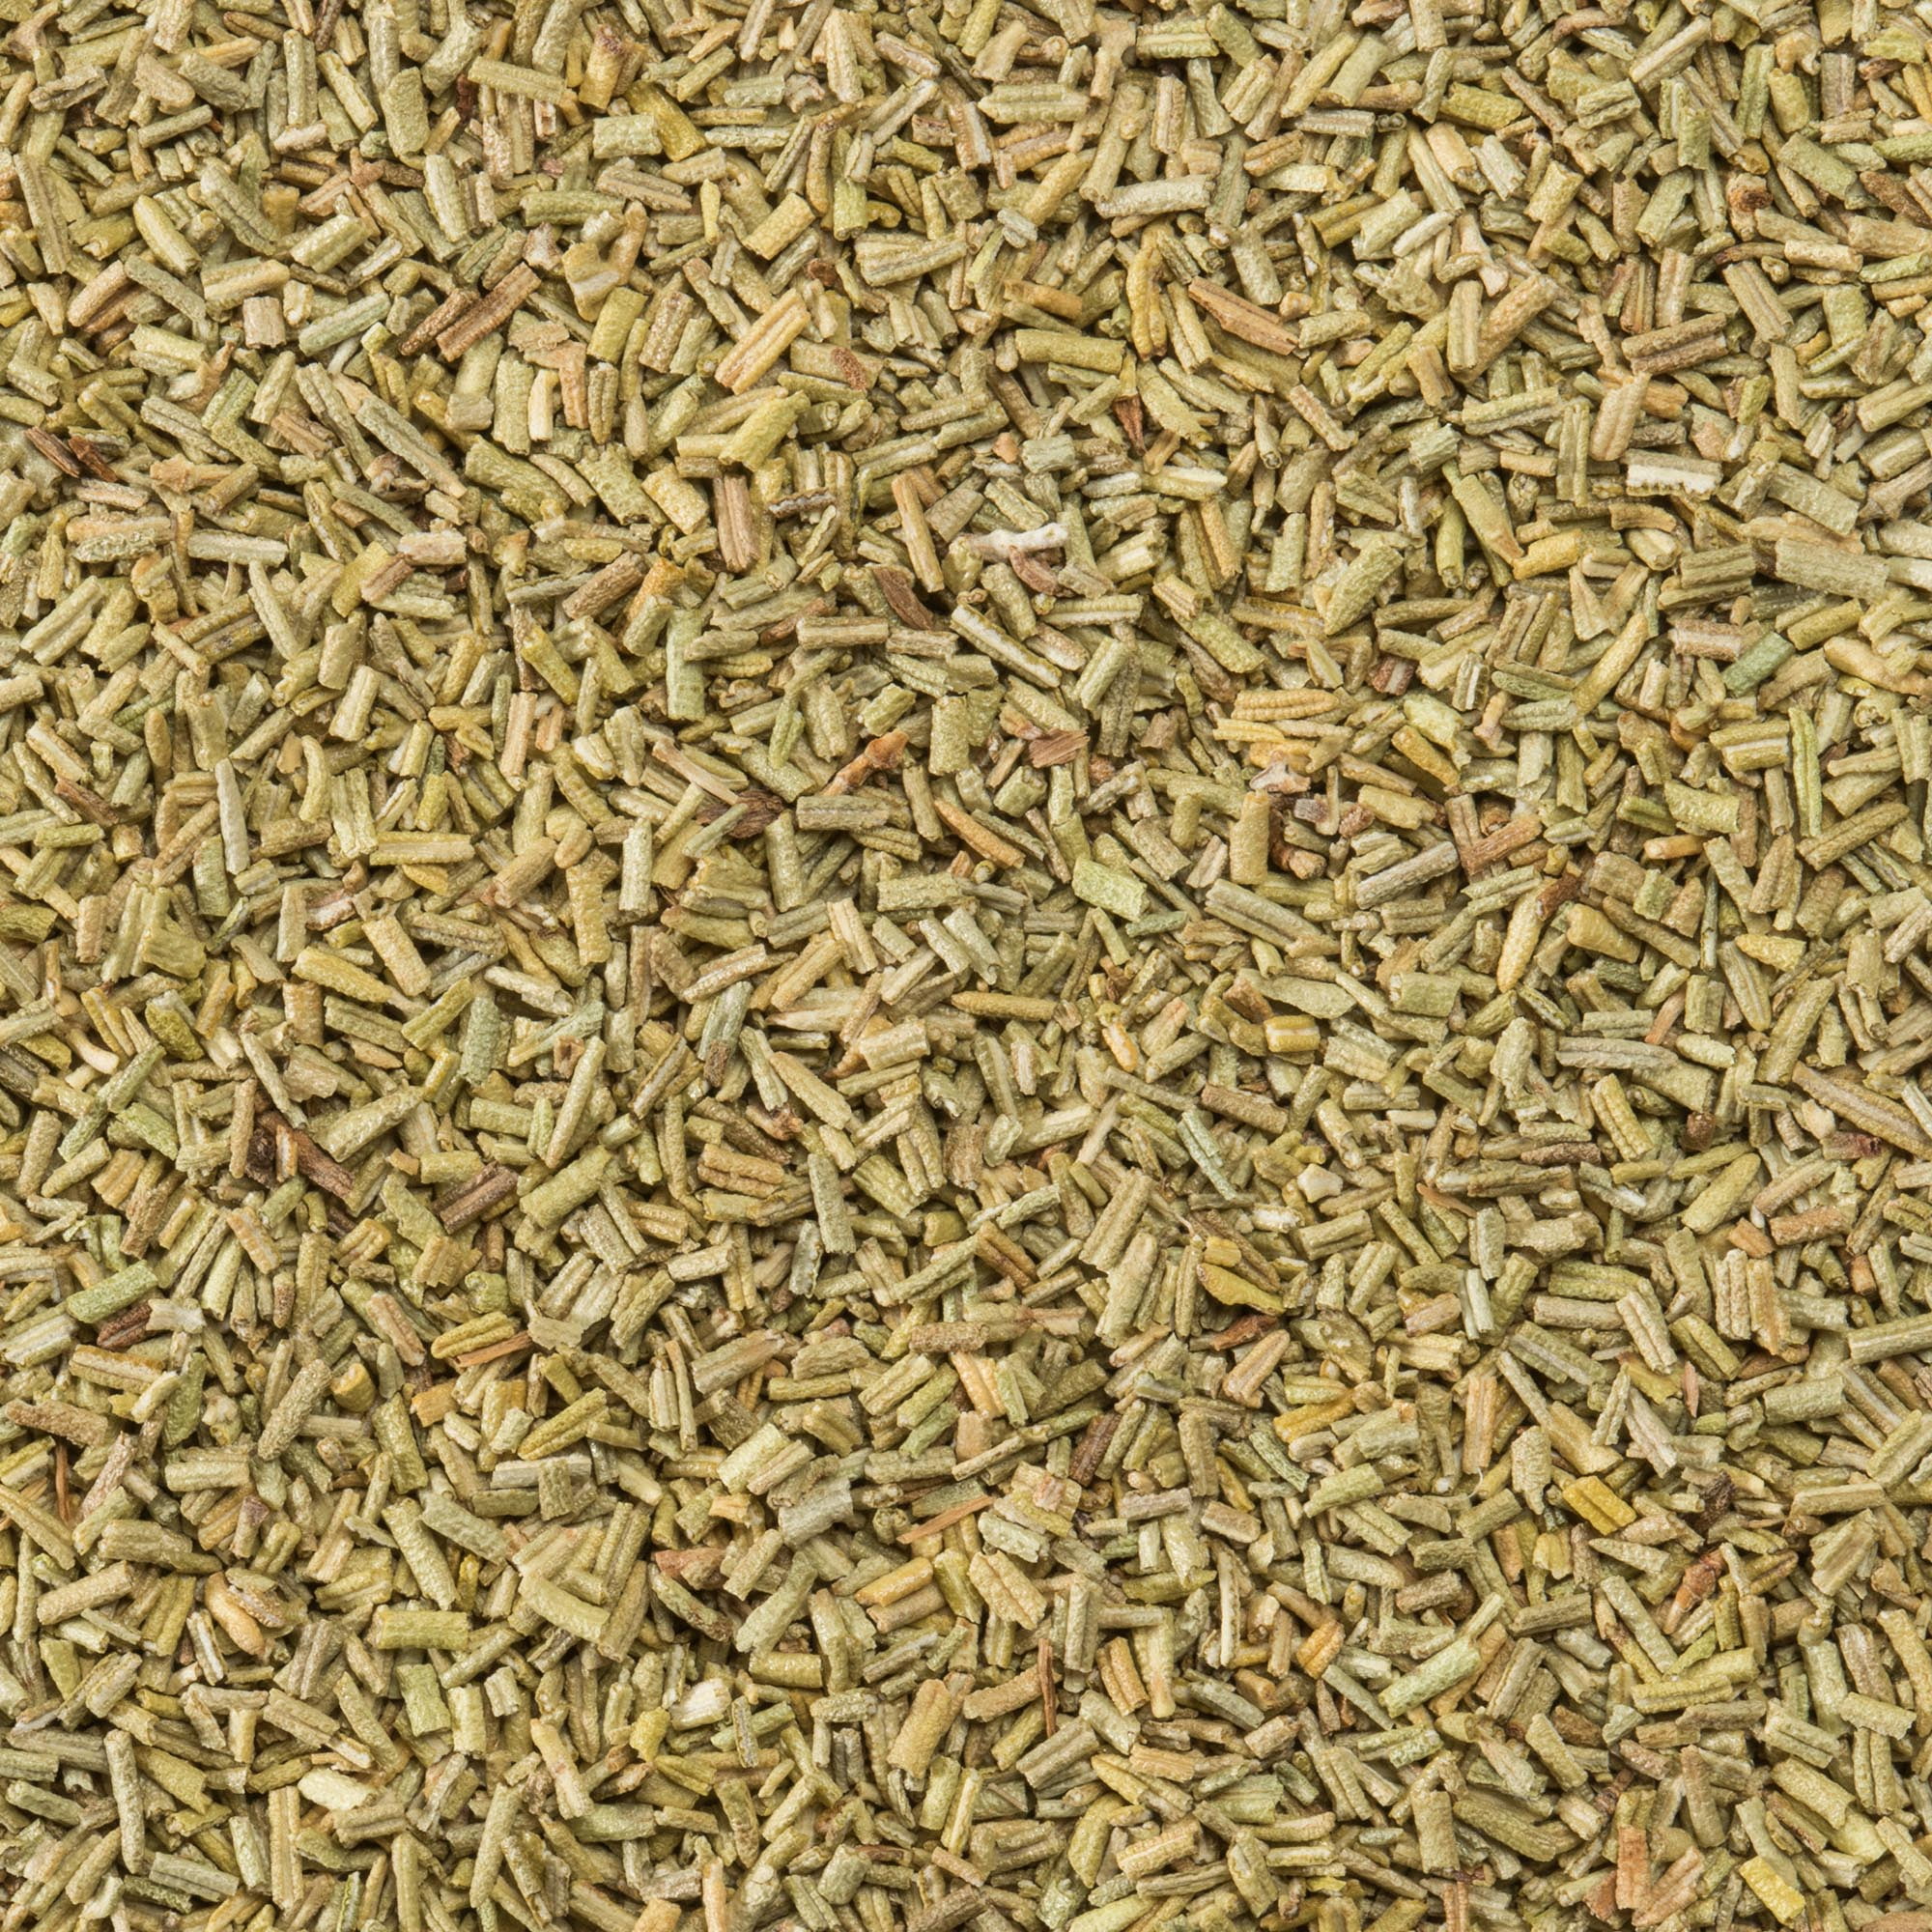 1 Spice Supreme Rosemary Leaves Seasoning 1.25 Oz Jar Cooking Dry